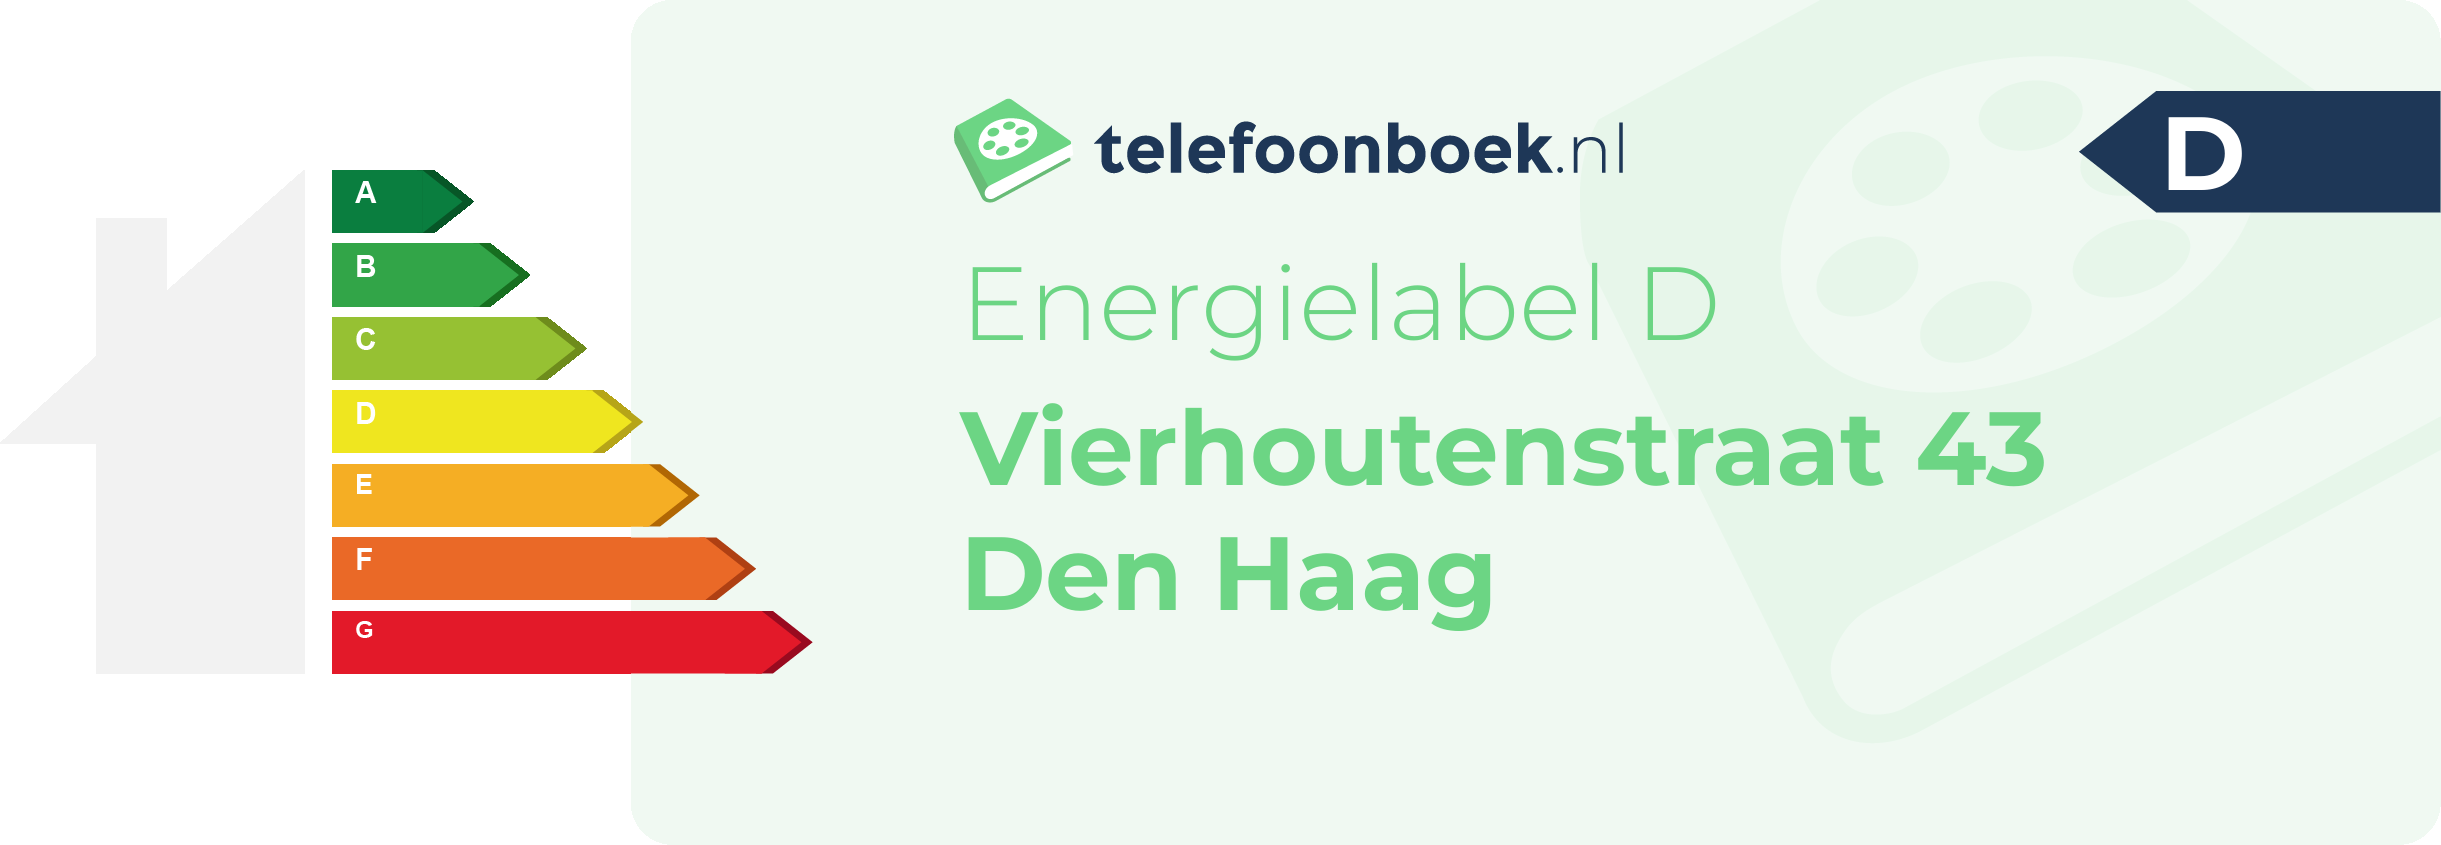 Energielabel Vierhoutenstraat 43 Den Haag